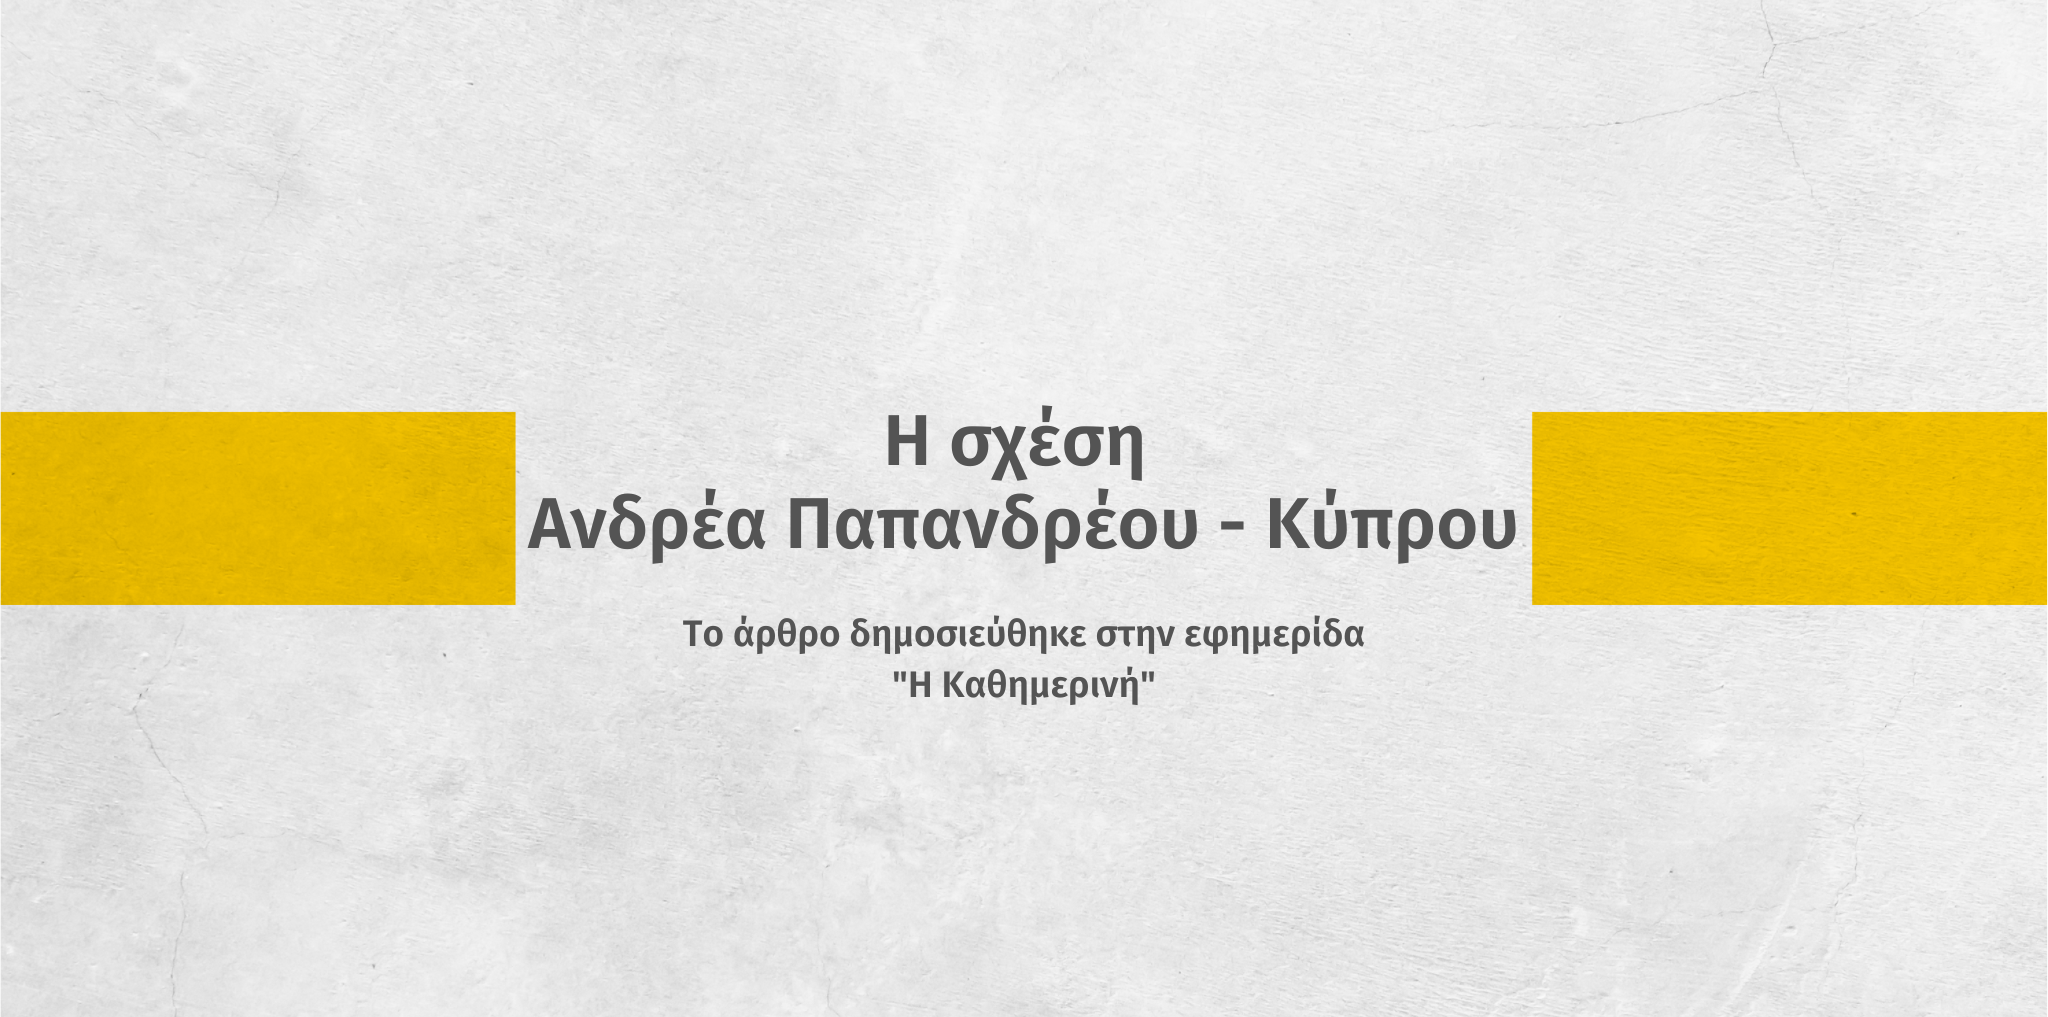 Η σχέση Ανδρέα Παπανδρέου – Κύπρου